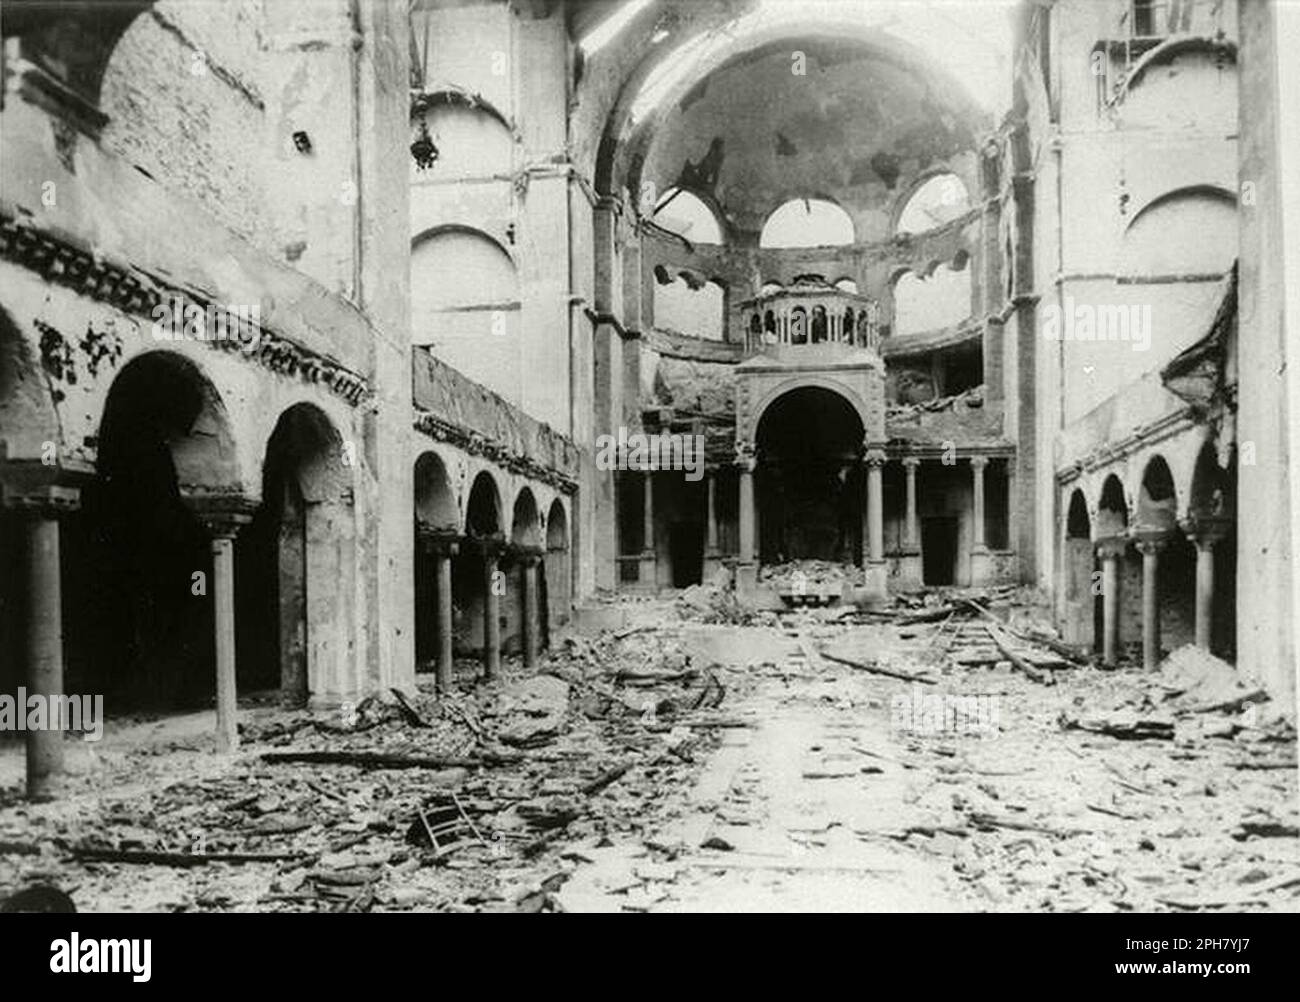 Innenansicht der zerstörten Fasanenstraße-Synagoge, Berlin, verbrannt auf Kristallnacht. Kristallnacht war ein landesweites Pogrom, das am 9. November 1938 von der nazi-Partei organisiert und durchgeführt wurde. Geschäfte und Synagogen wurden zerstört und Menschen gedemütigt und geschlagen, während die Polizei zuschaute oder sogar half. Obwohl die Schäden und die Zahl der Angreifer recht gering waren, zeigte die Tatsache, dass sie völlig unangefochten waren, den Nazis, dass sie wirklich mit den Juden anfangen konnten, und ist damit einer der wichtigsten Meilensteine auf dem Weg zum Holocaust. Stockfoto